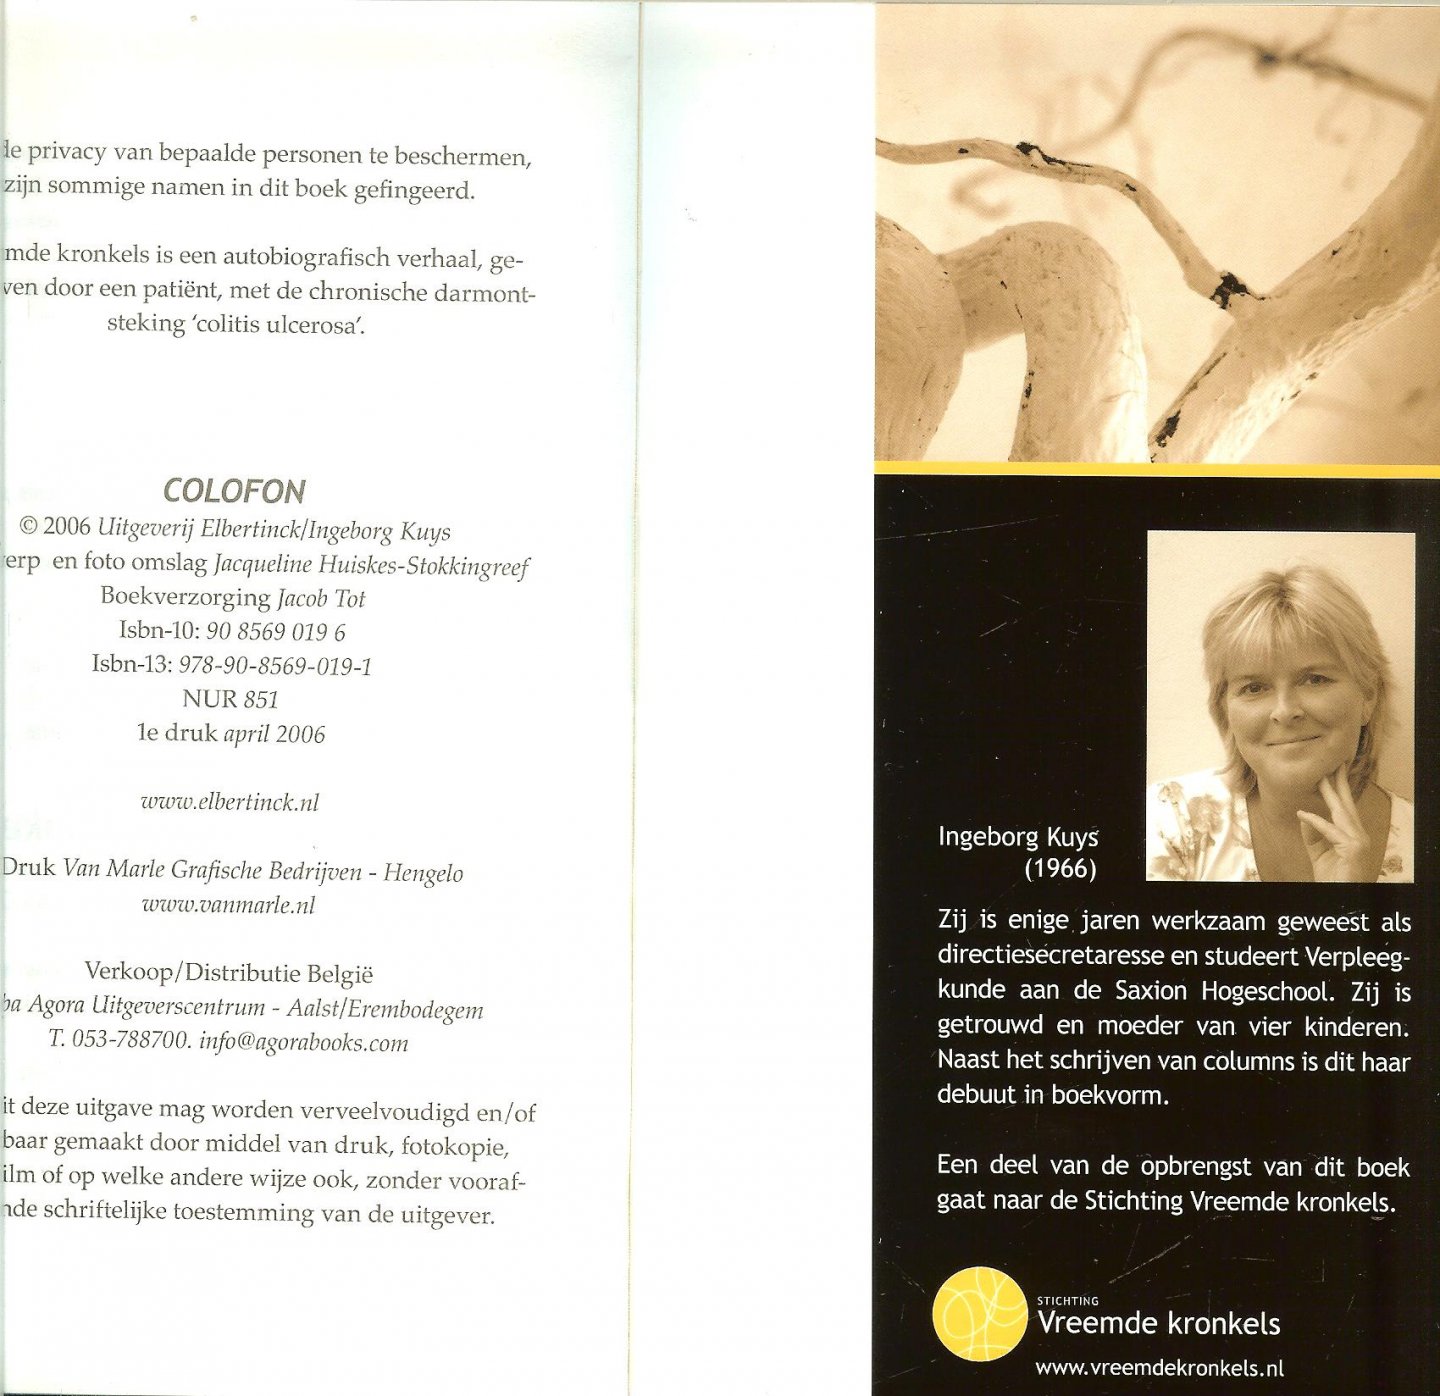 Kuys, Ingeborg .A.M.  Voorwoord door G. de Bondt gastro-enteroloog  April 2006 - Vreemde kronkels   ..   Leven met de ziekte Colitis Ulcerosa